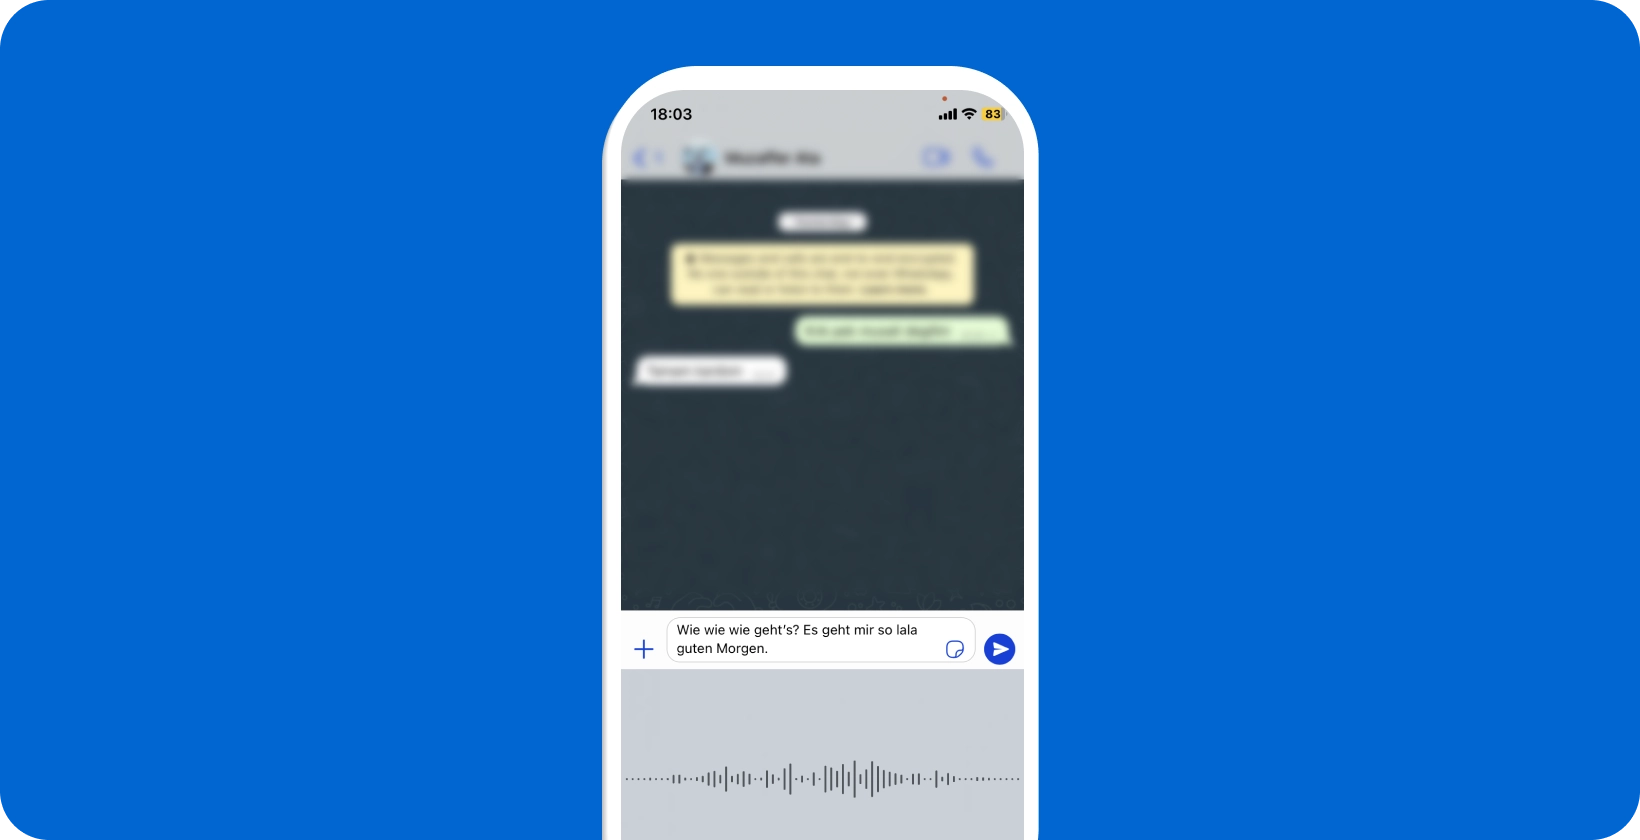 Смартфон, показывающий голосовую диктовку WhatsApp, демонстрирующий преобразование речи в текст в режиме реального времени.